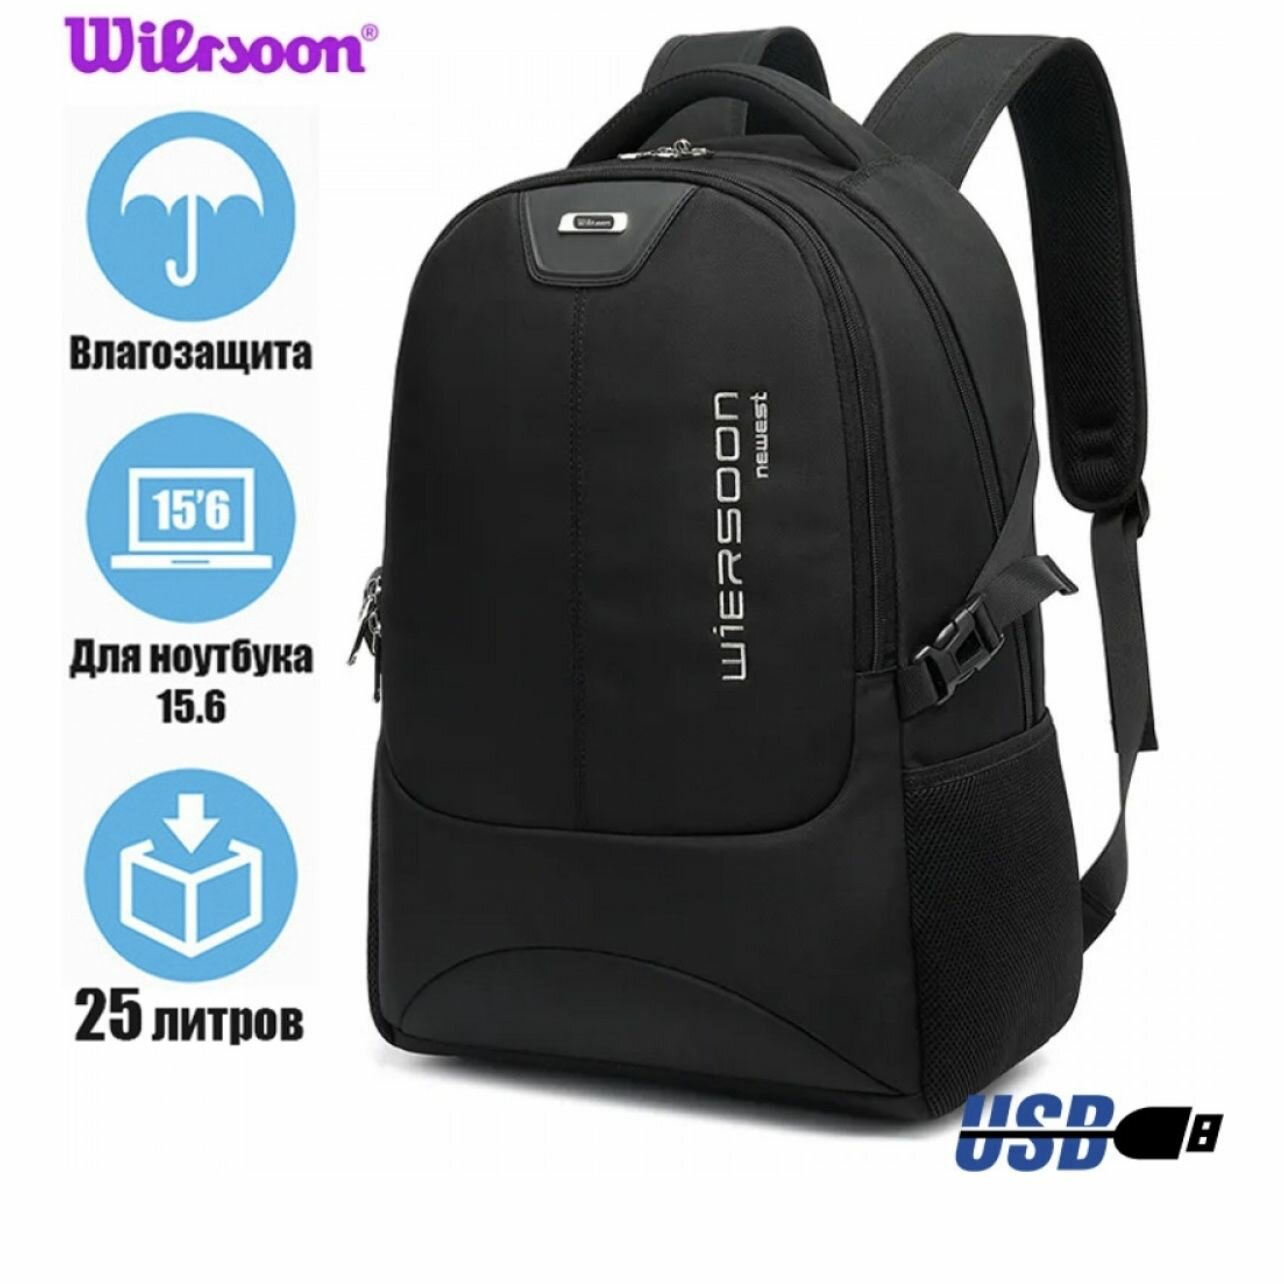 Рюкзак мужской городской черный Wiersoon Megapolis WH11008 для ноутбука 17 дюймов, с USB портом, 25 литров